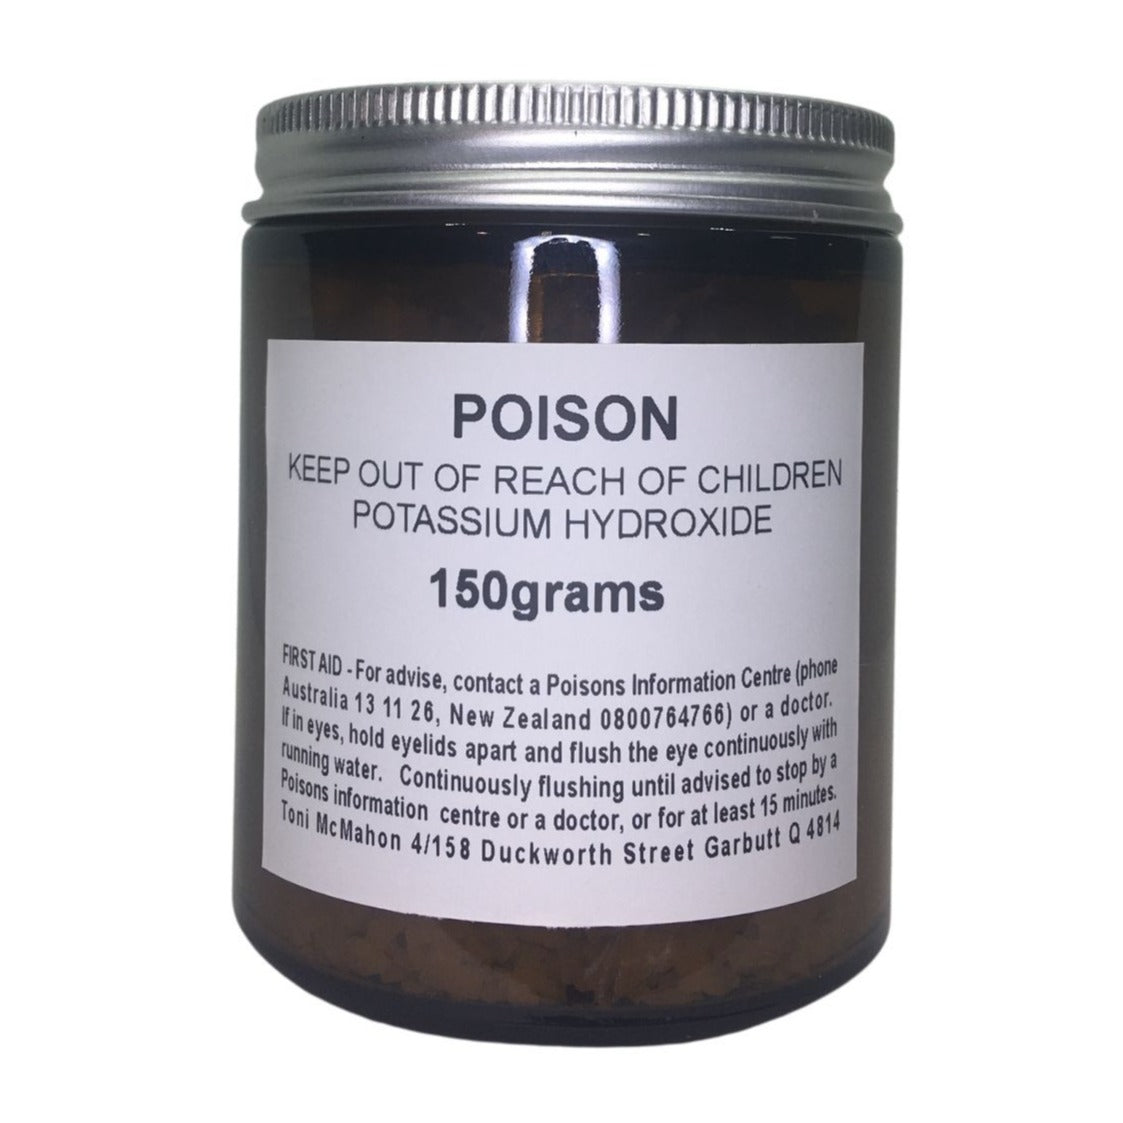 Potassium Hydroxide 150g